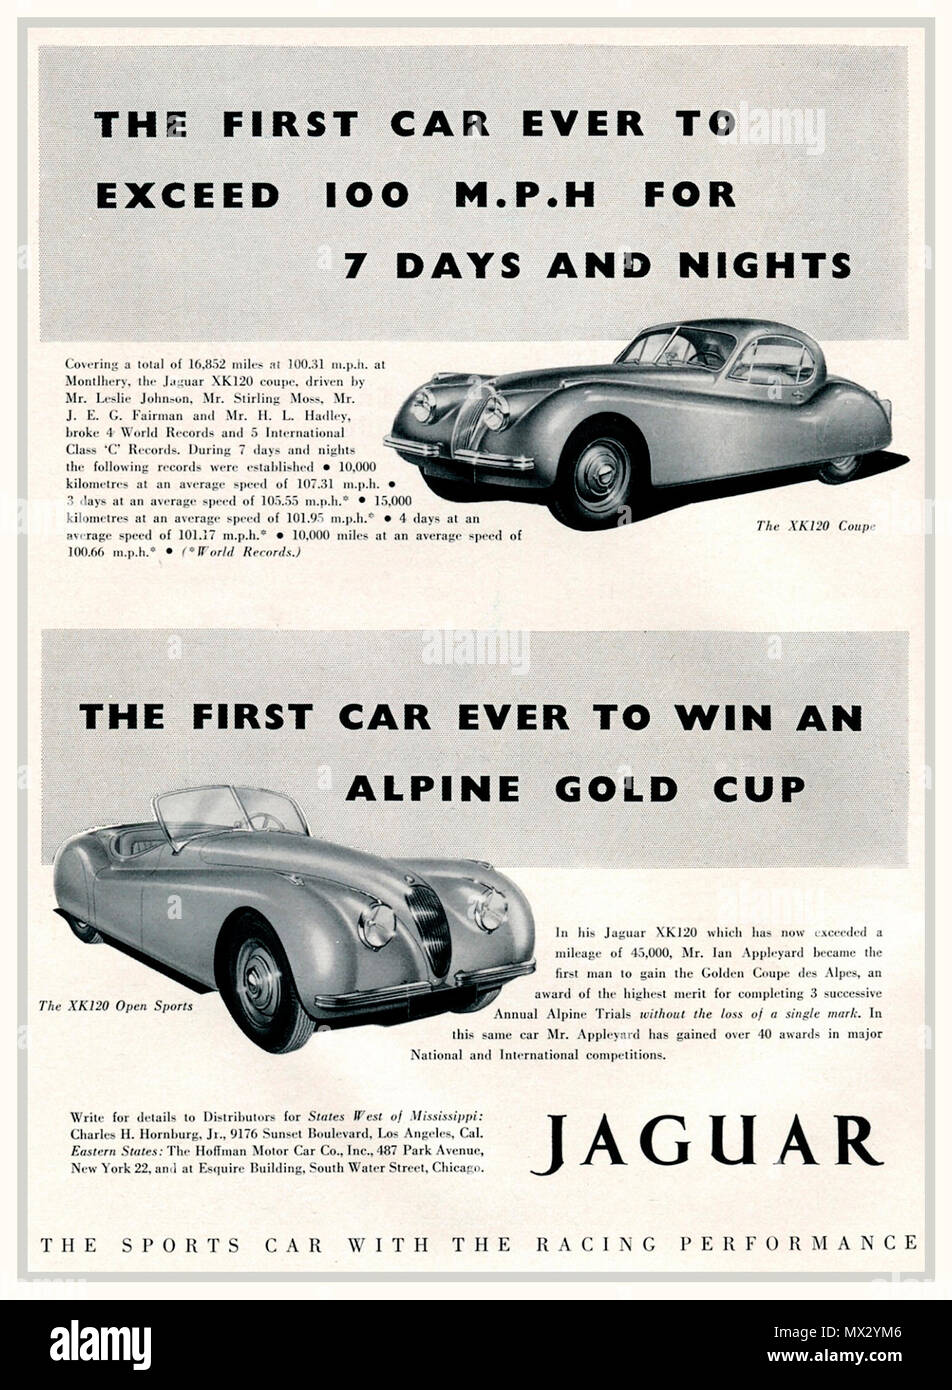 1950 Vintage publicité pour Jaguar XK120 super sports cars Le Coupé et Open Sports 'la production la plus rapide voiture de sport dans le monde, d'abord pour dépasser 100mph pendant 7 jours et nuits d'endurance. La voiture la plus remarquable de sa génération conçu et construit en Grande Bretagne UK Banque D'Images